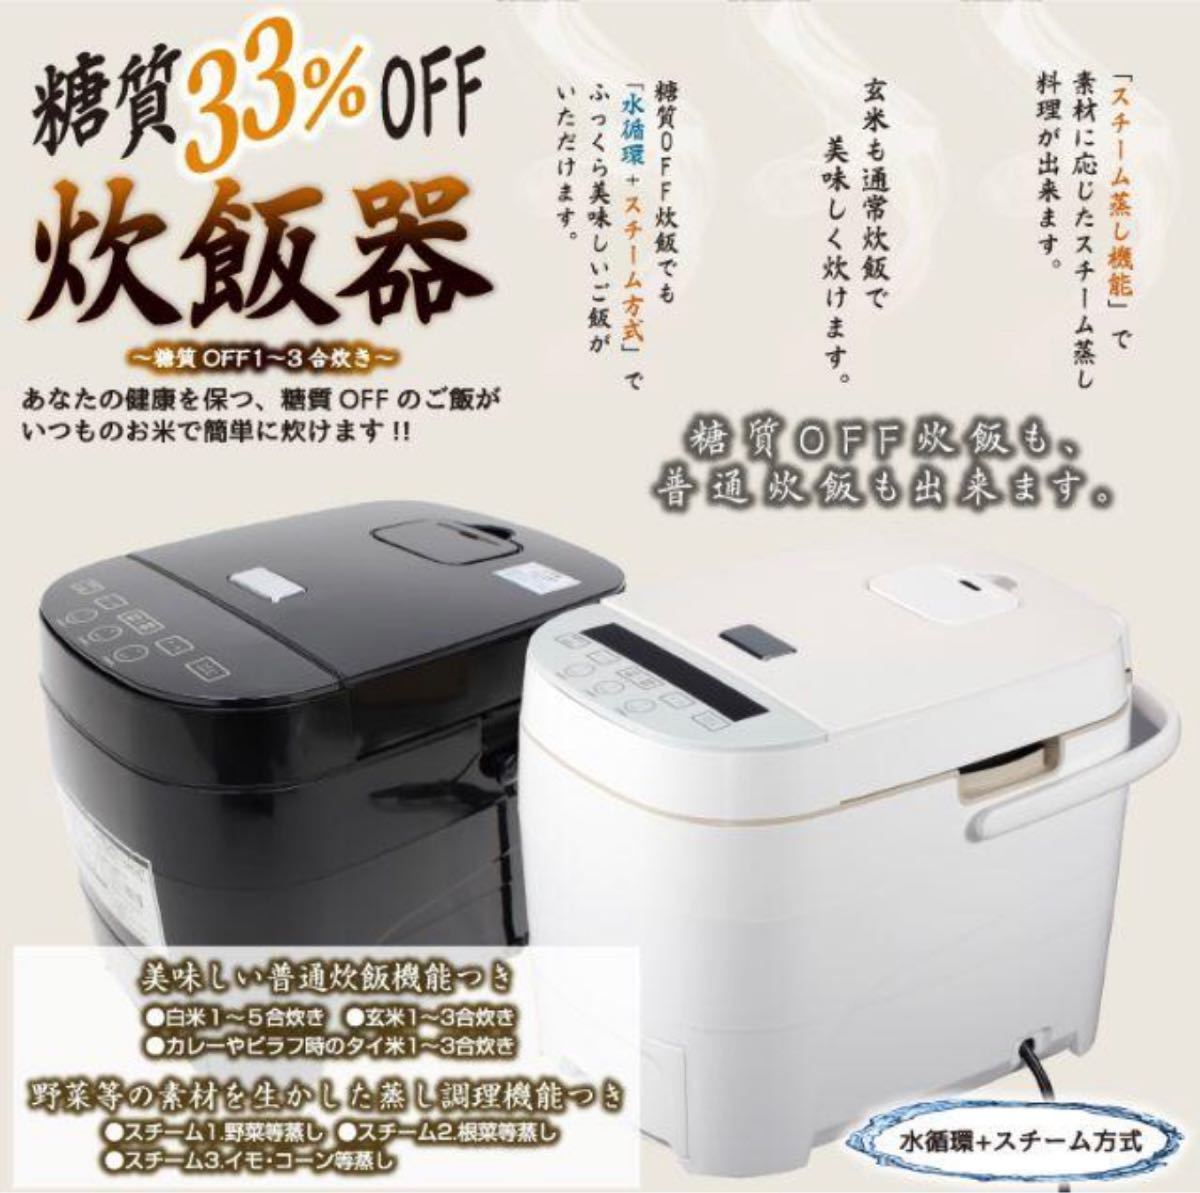 【新品未開封品】ヒロコーポレーション 5合炊き 糖質オフ炊飯器 HTC-001WH ホワイト